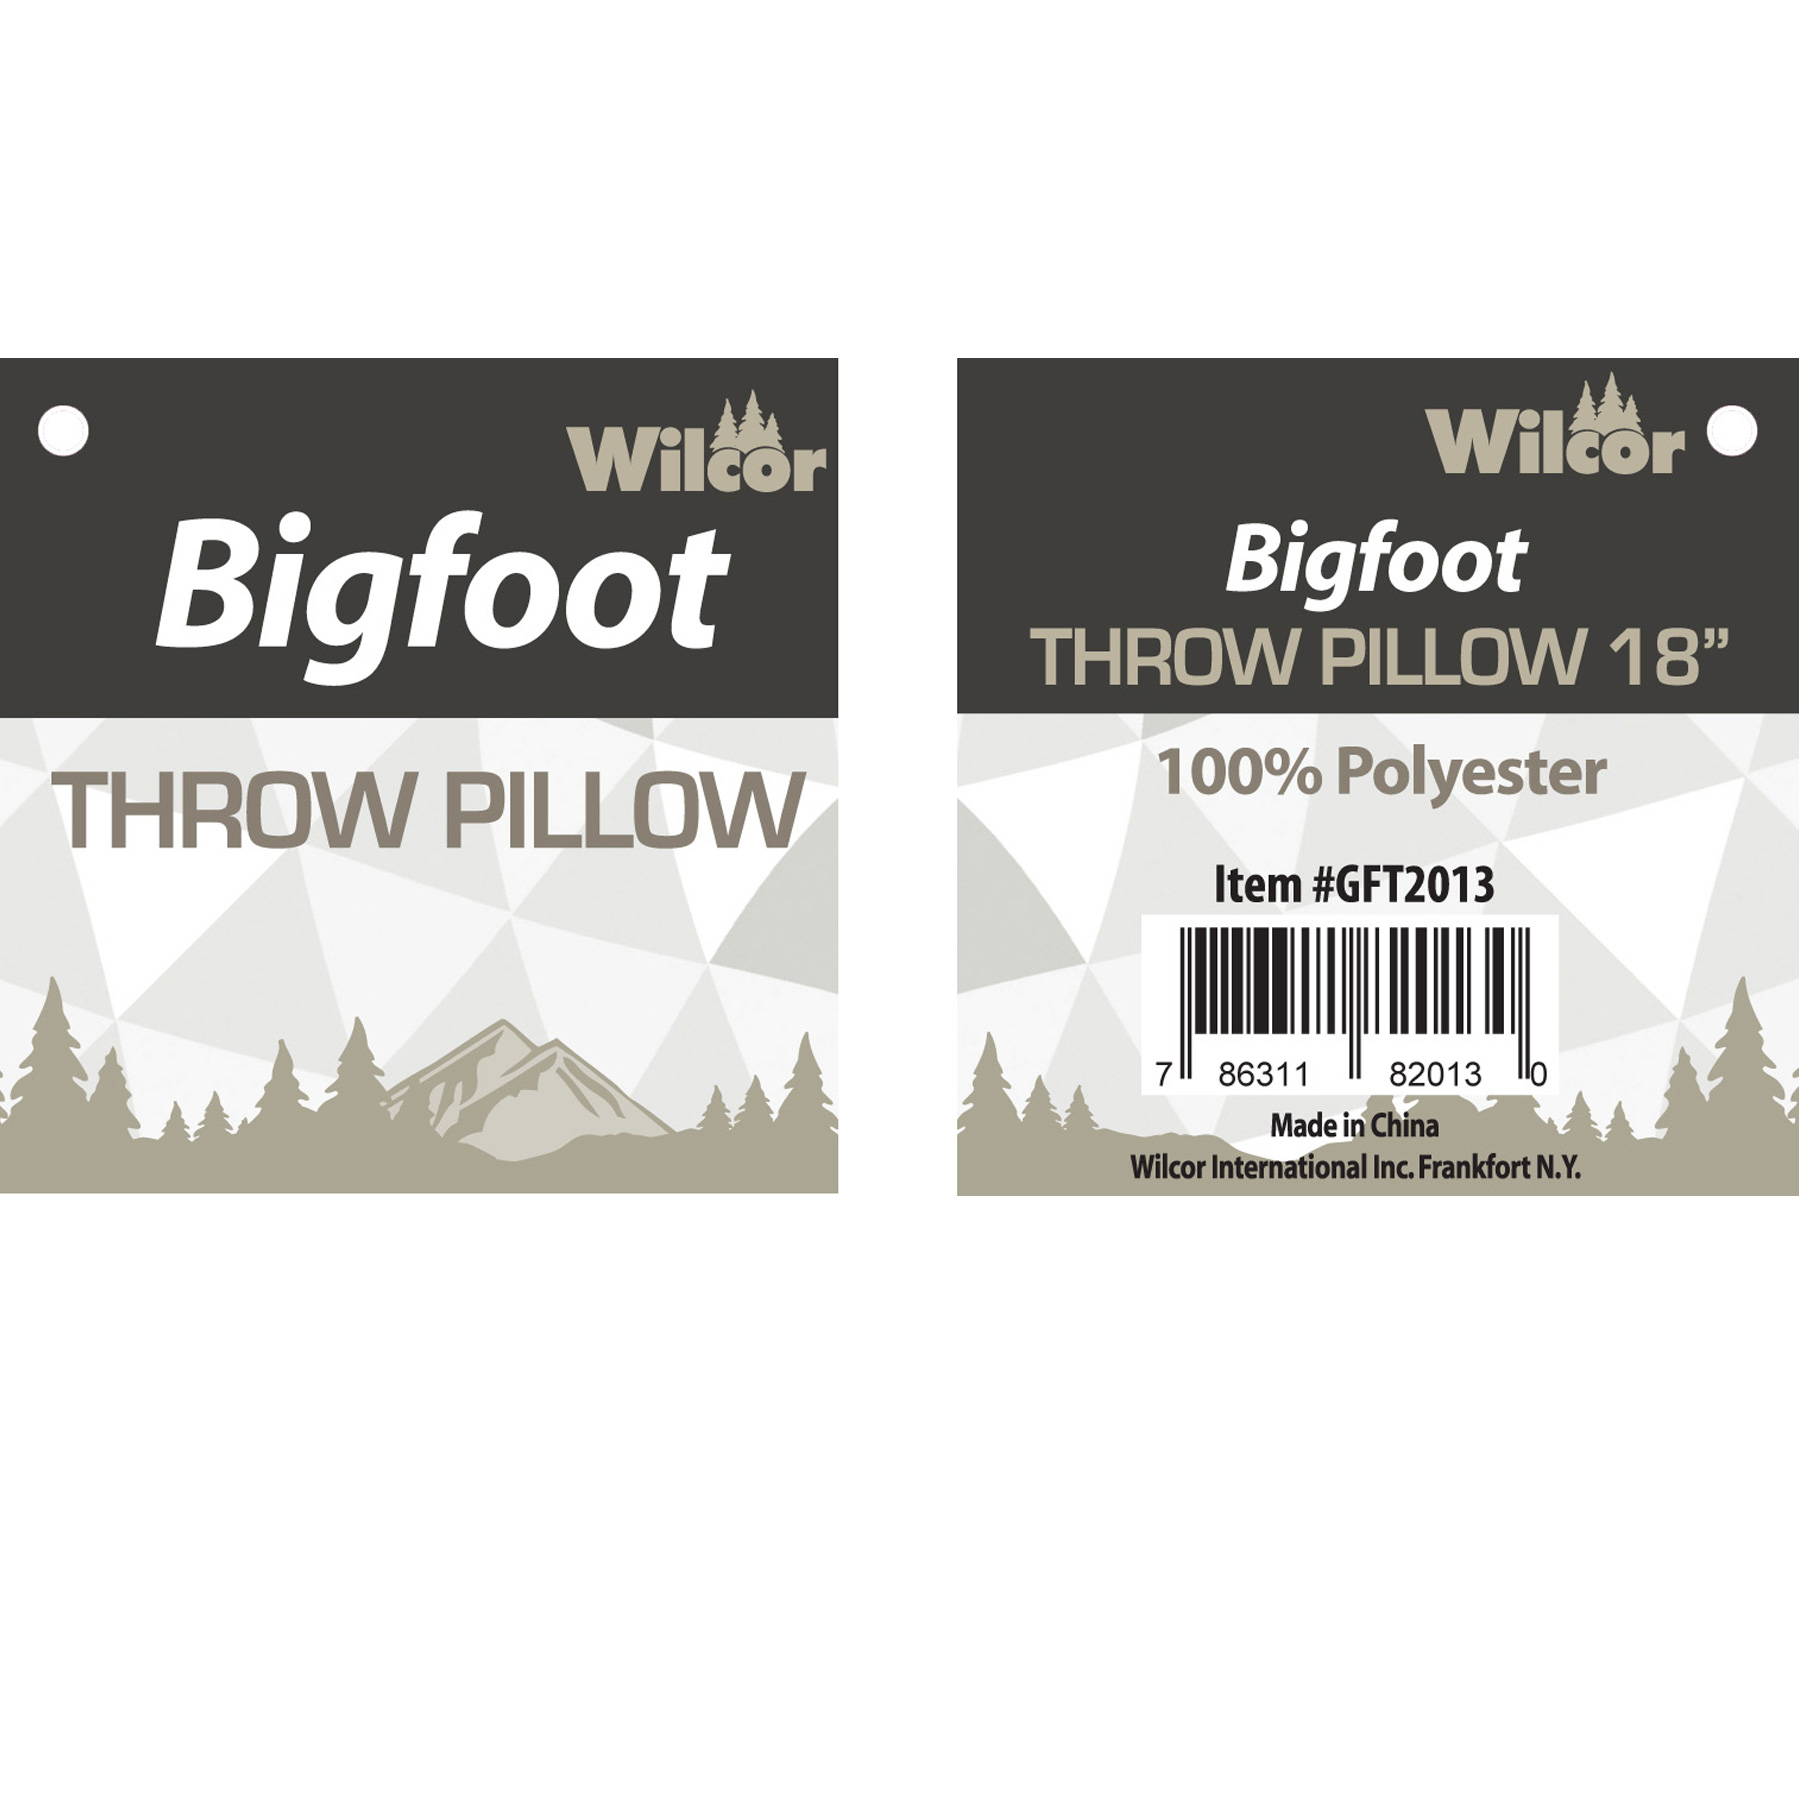 Plush Bigfoot Hairy Pillow